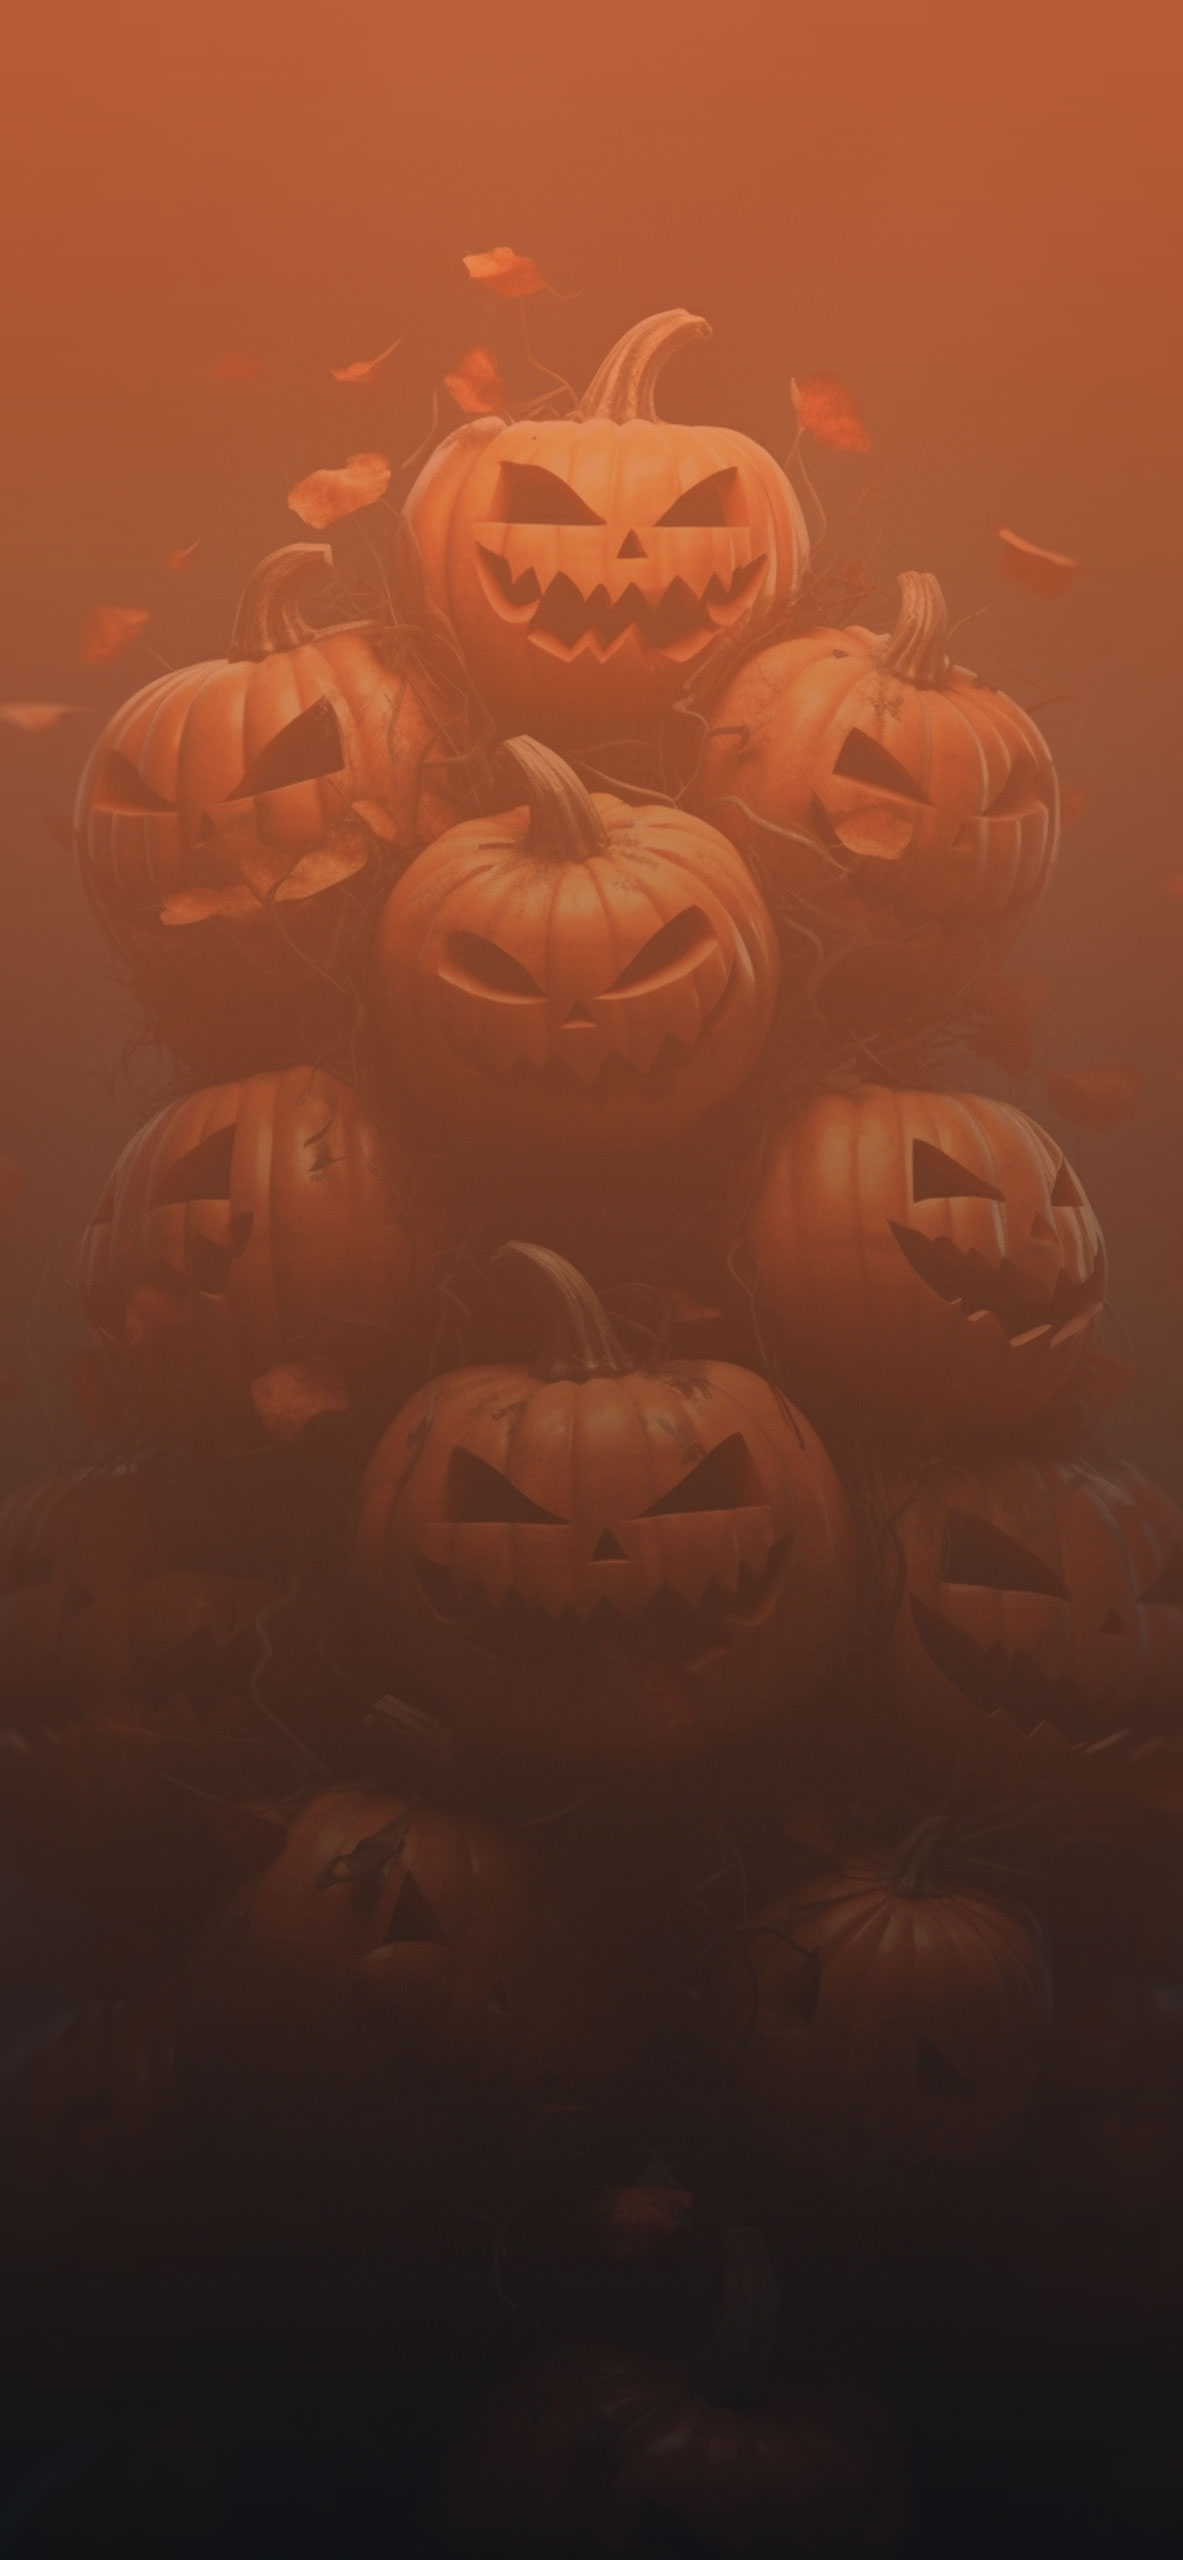 Dark Halloween Pumpkins Aesthetic Wallpaper